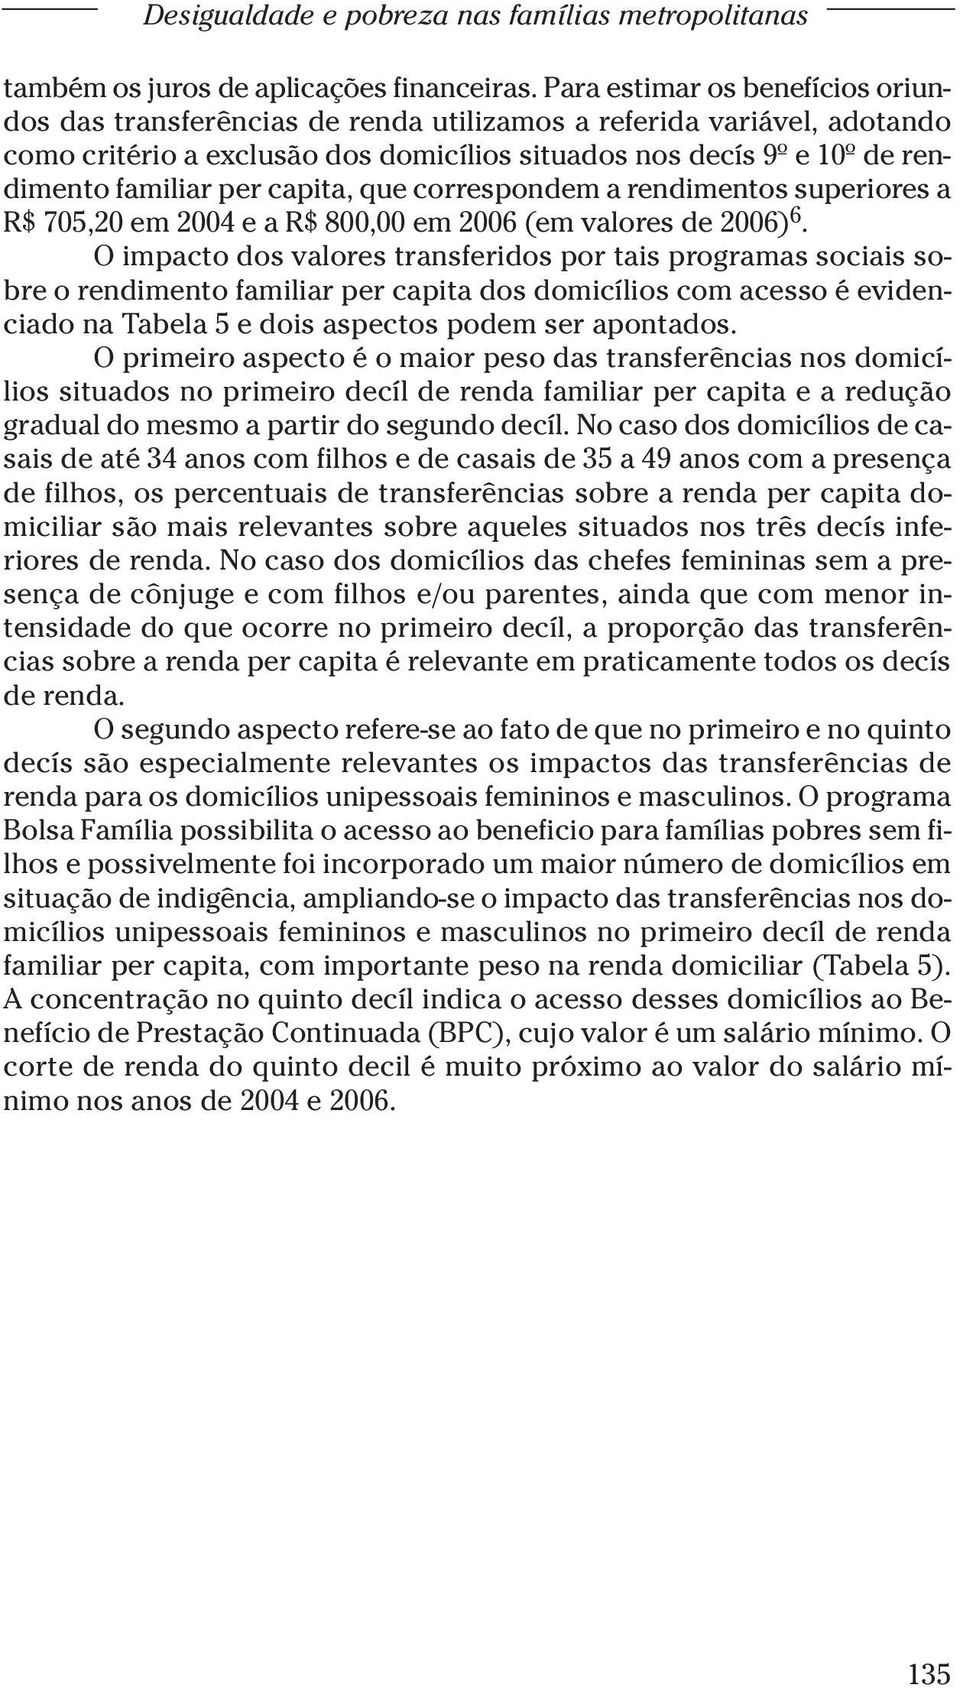 capita, que correspondem a rendimentos superiores a R$ 705,20 em 2004 e a R$ 800,00 em 2006 (em valores de 2006) 6.